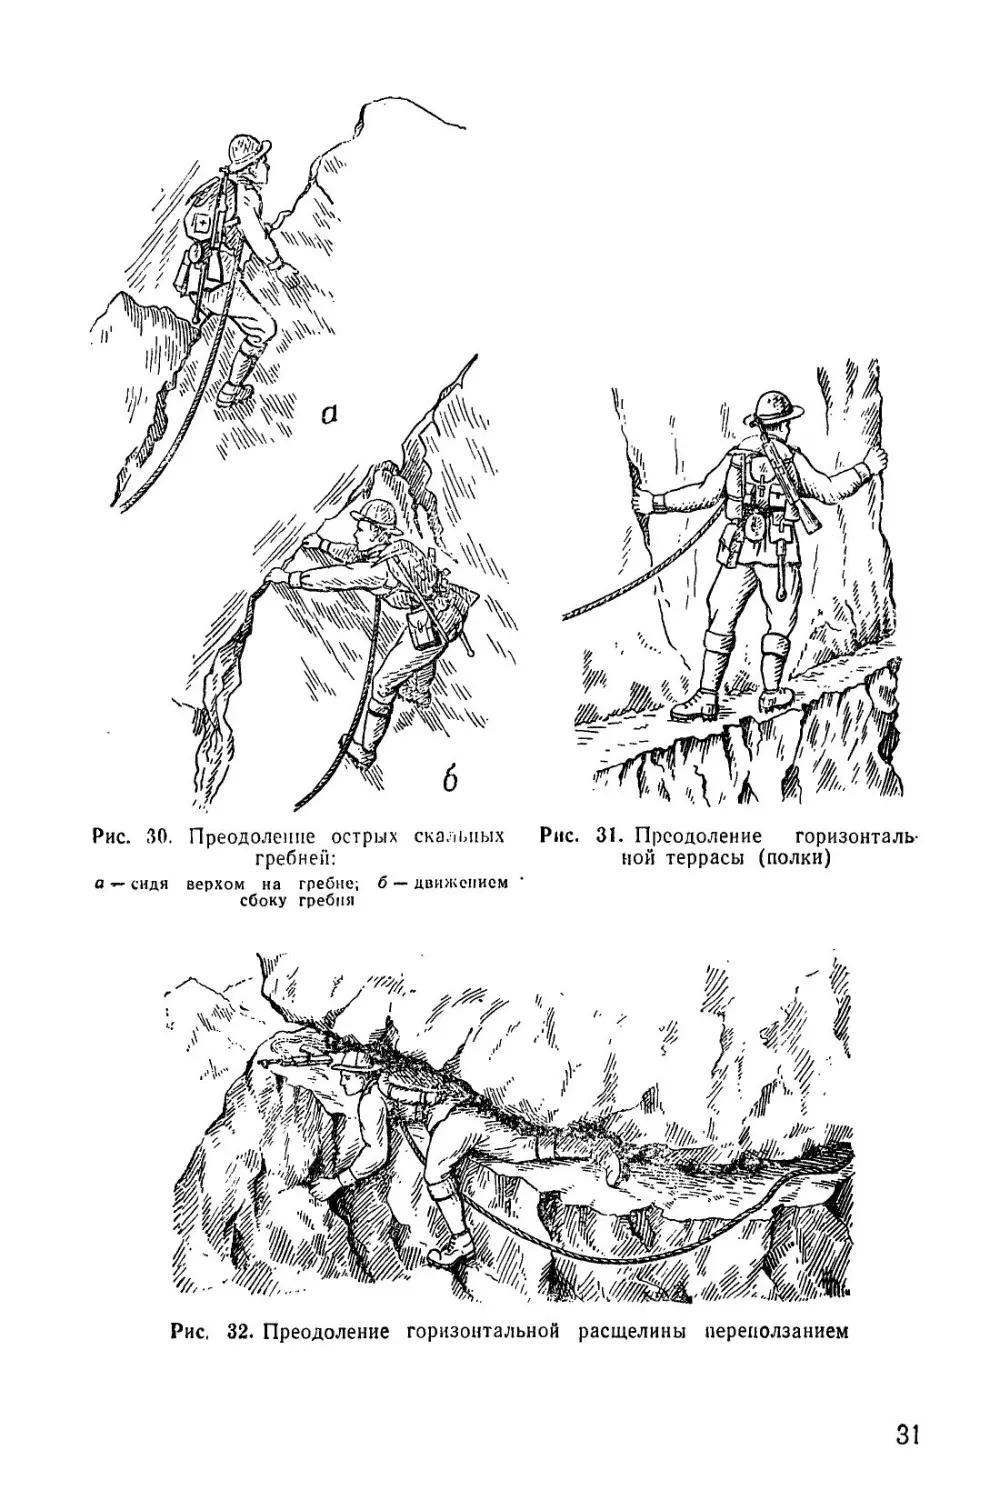 Методическое пособие Обучение мотострелковых подразделений боевым действиям в горах (1979)_32